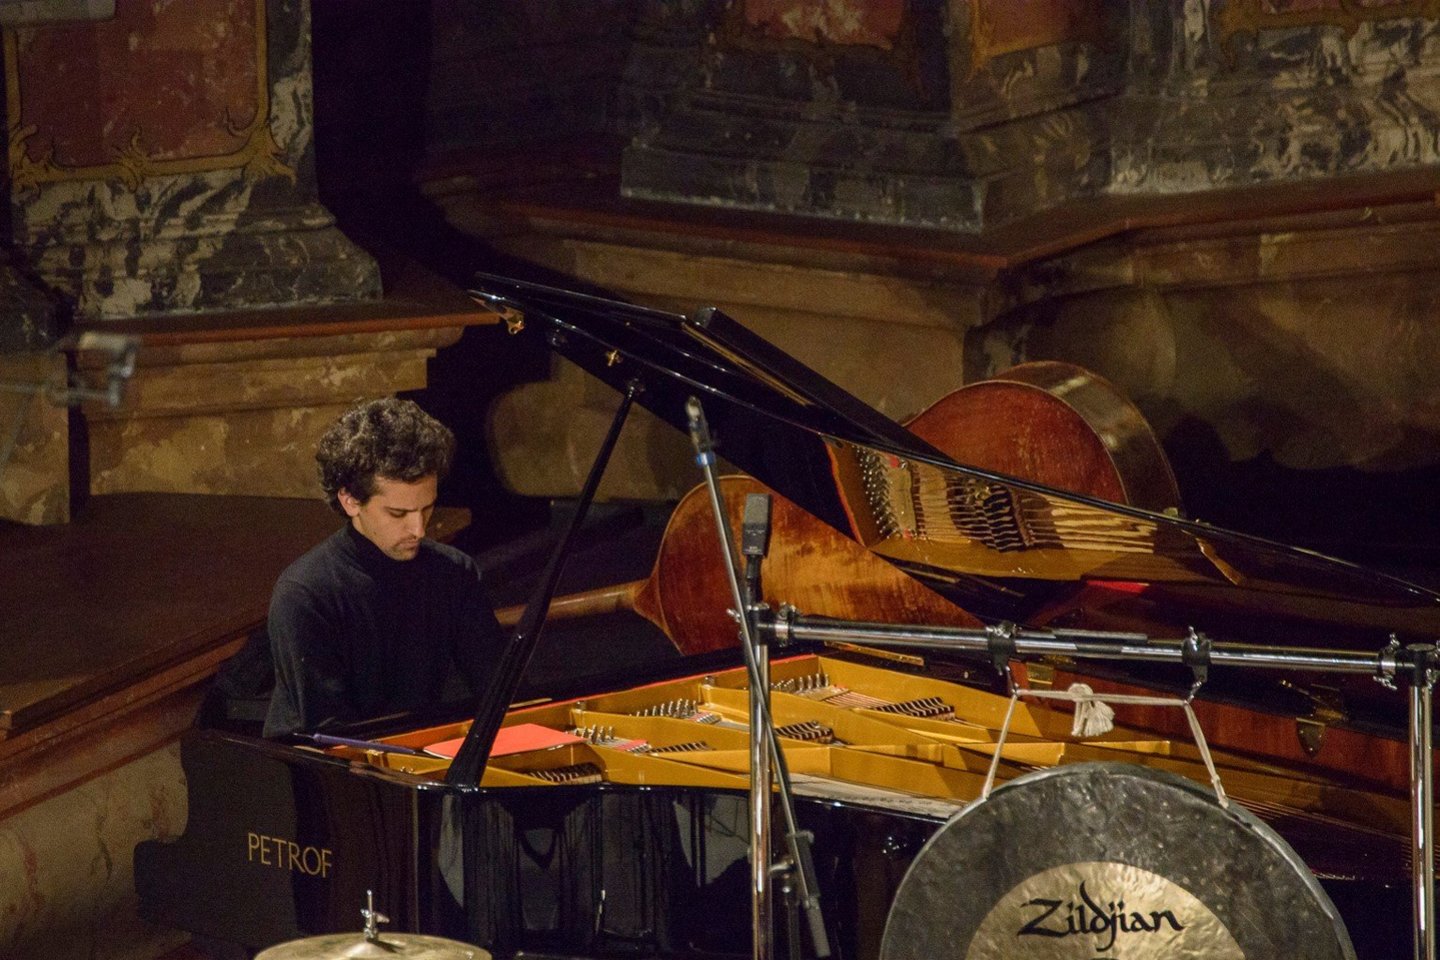  Šv.Kotrynos bažnyčioje Vilniuje kompozitoriaus S.Sciarrino kūrybą pristatė šiuolaikinės muzikos ansamblis „Icarus“ iš Italijos. 